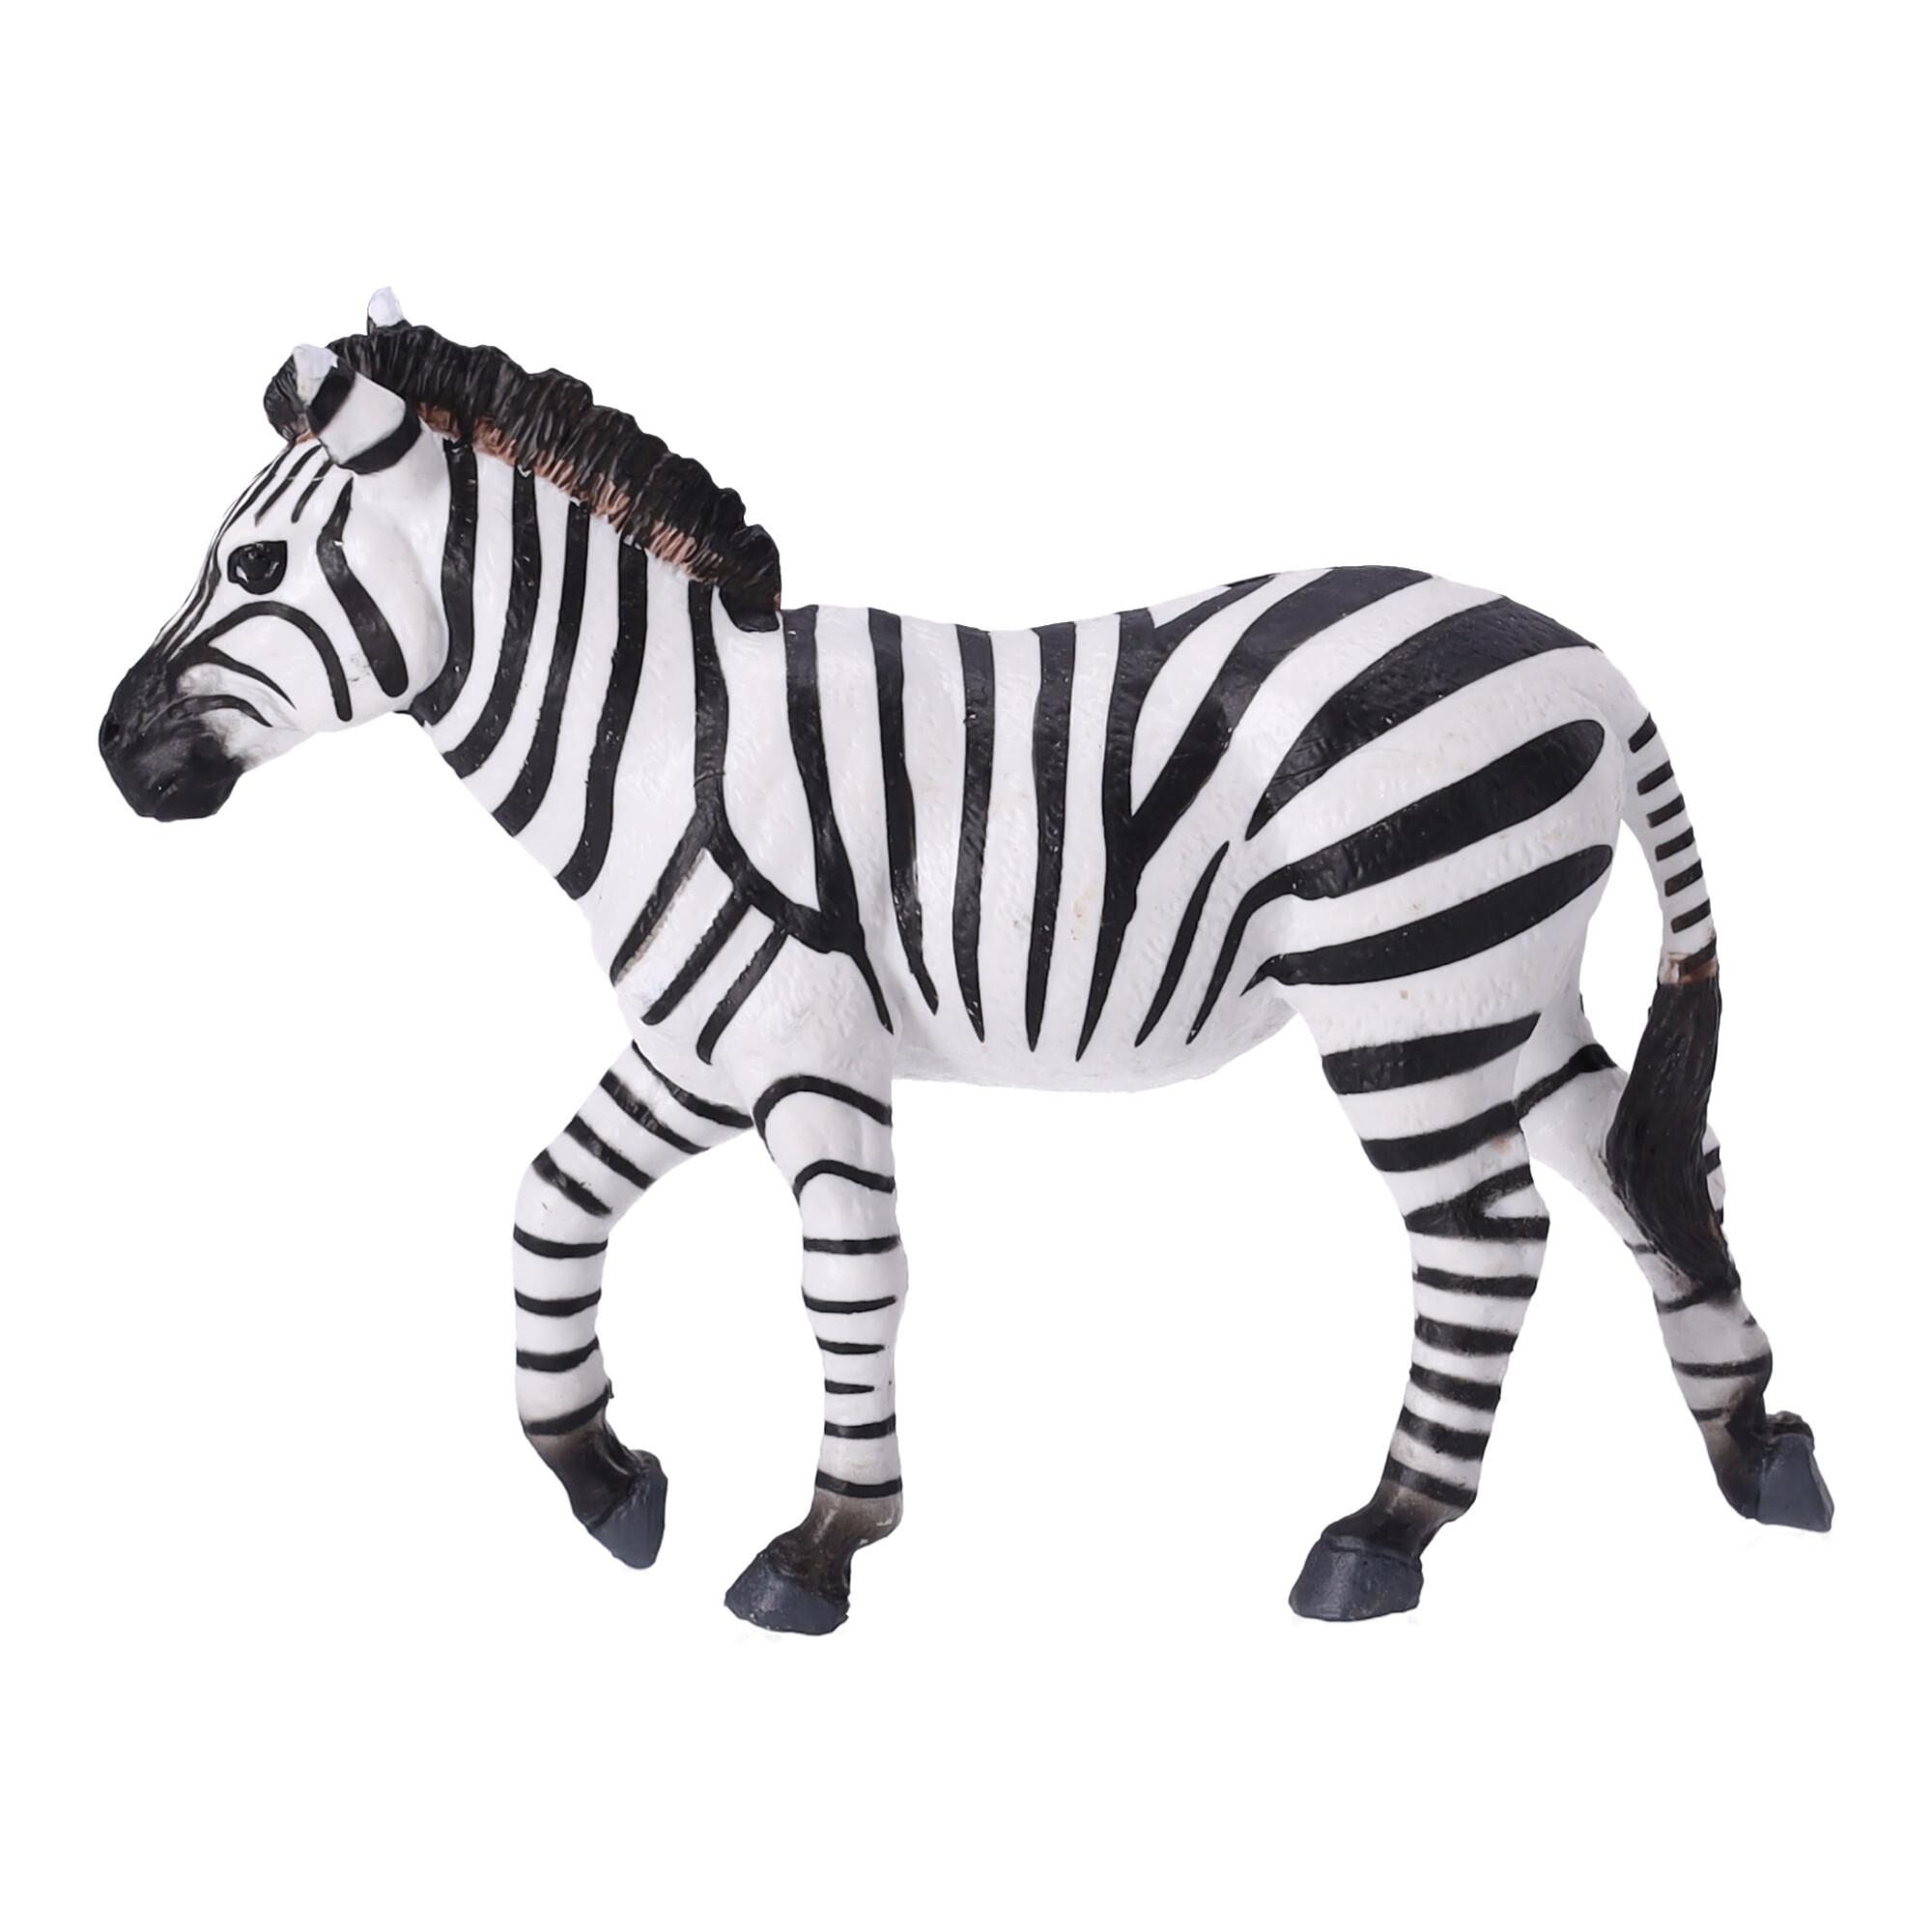 Figurka kolekcjonerska Zebra, Papo